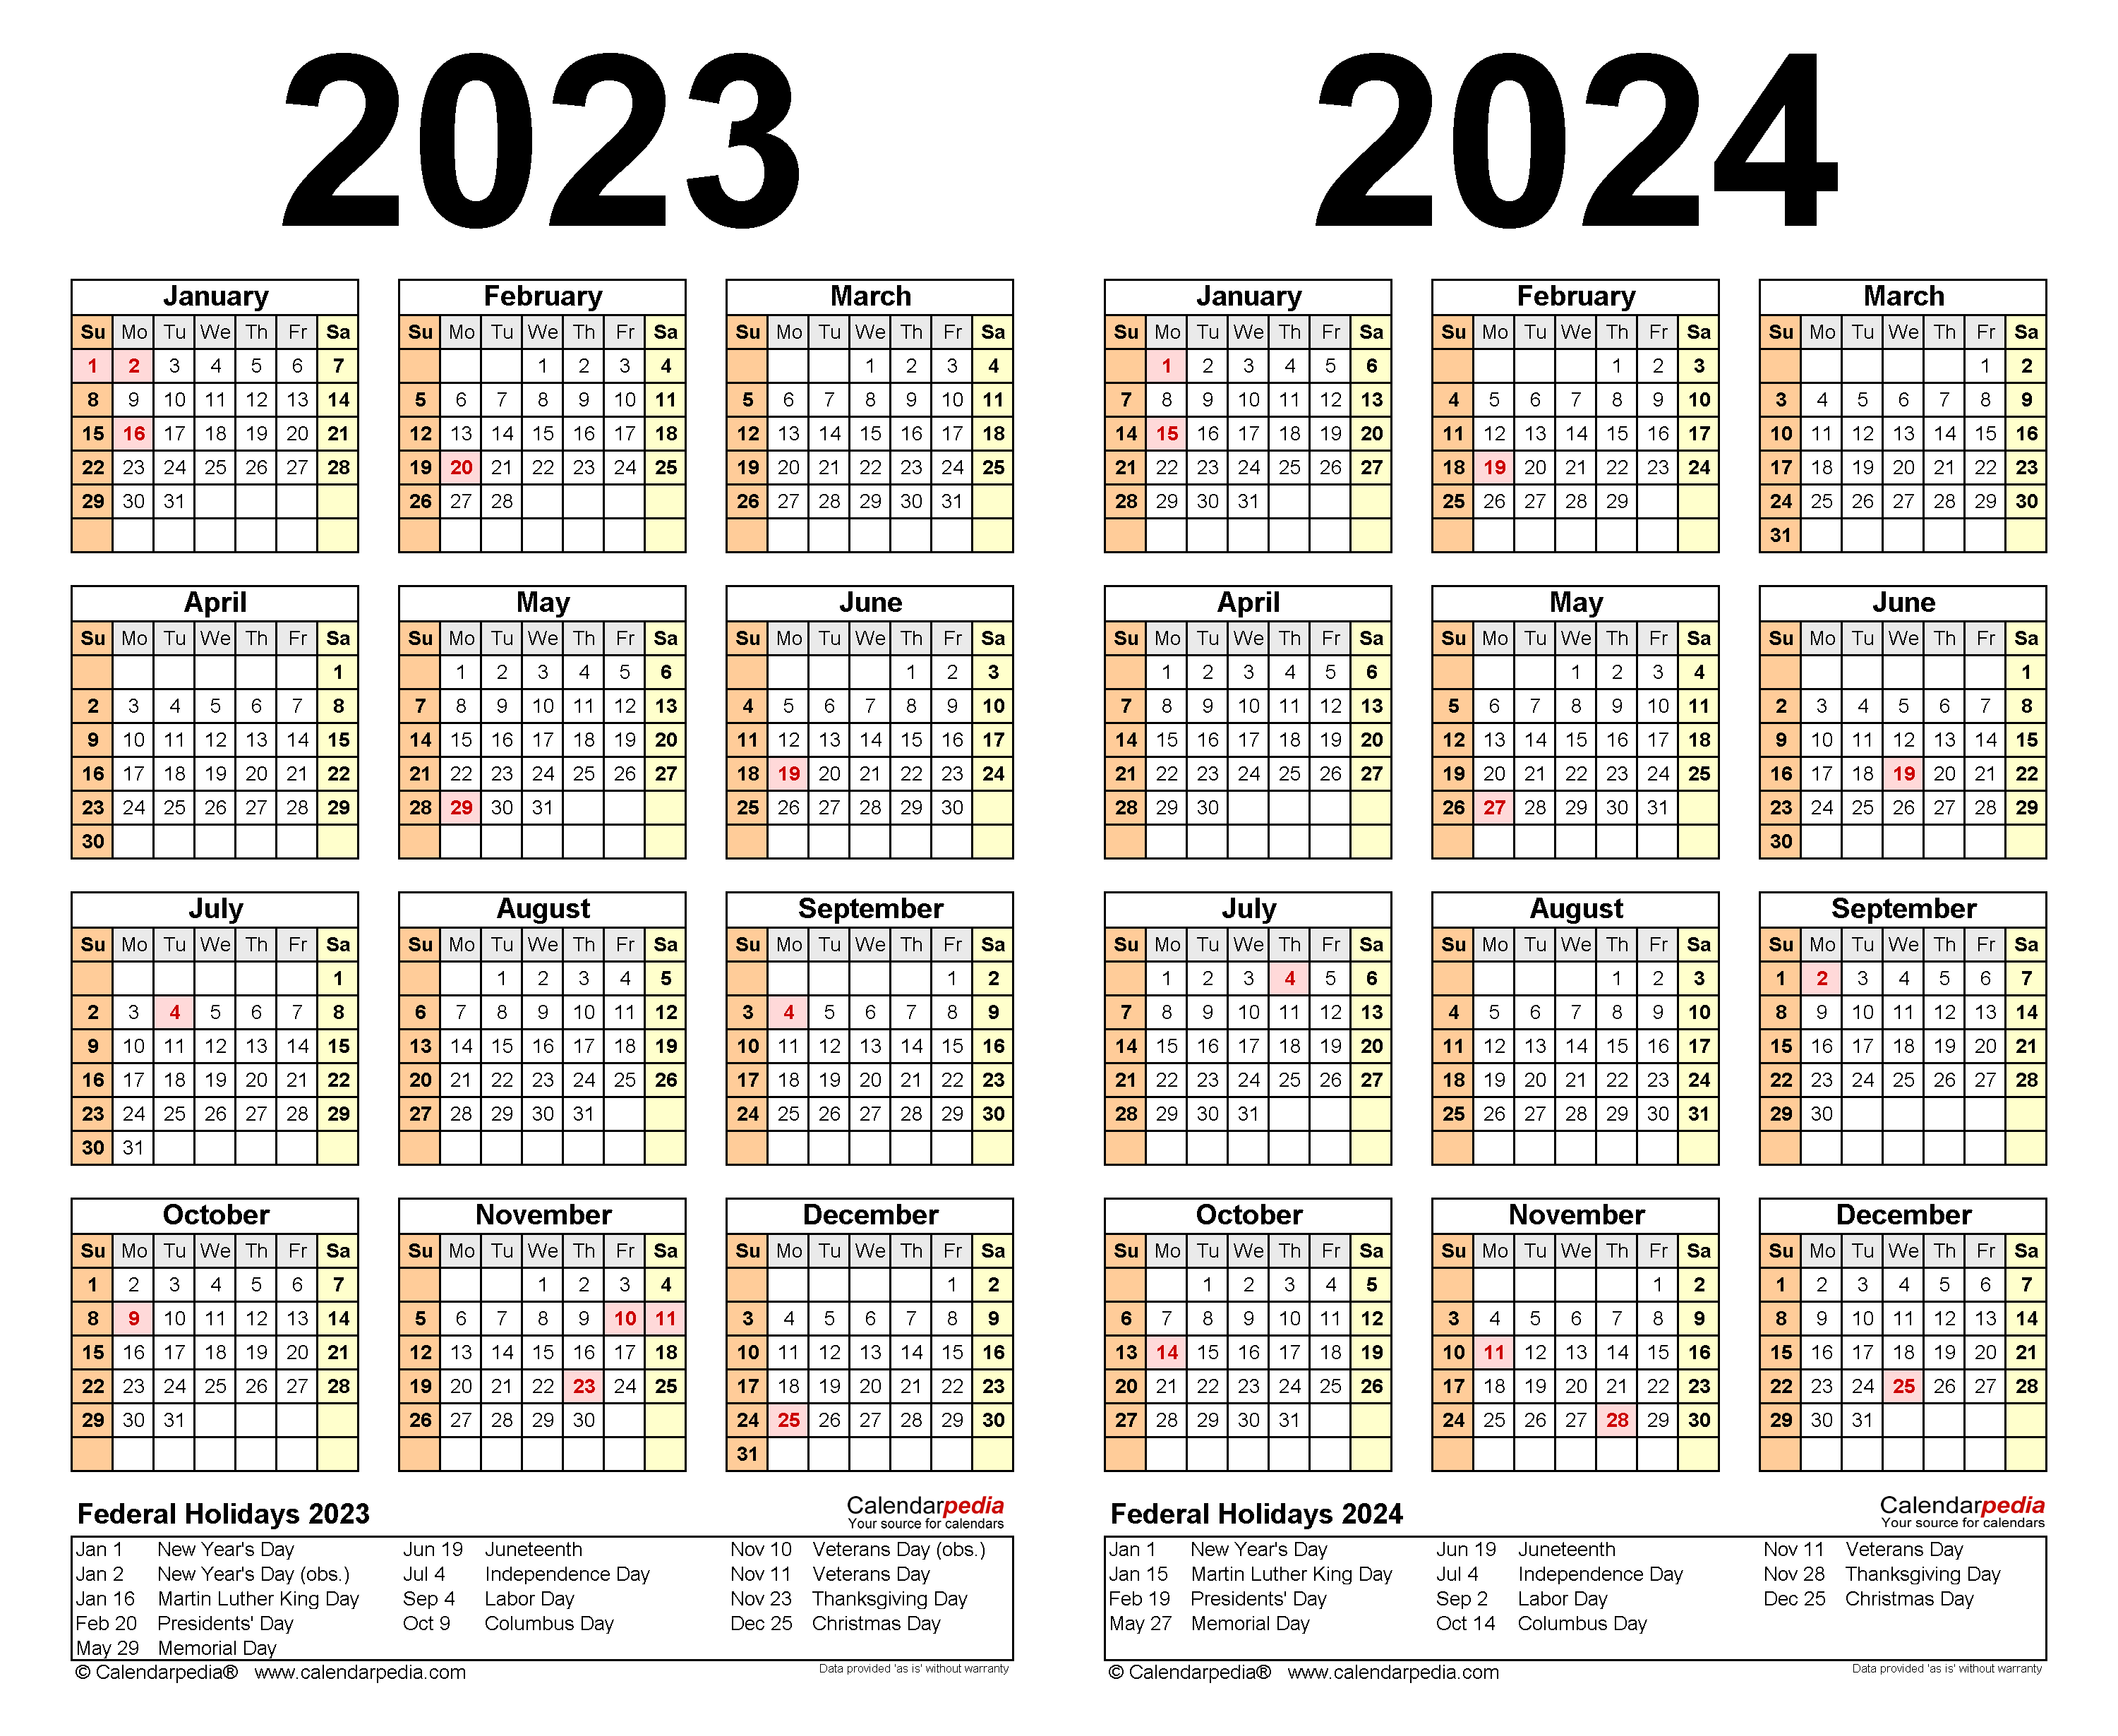 Nafcs Calendar 2023 2024 2023 Calendar